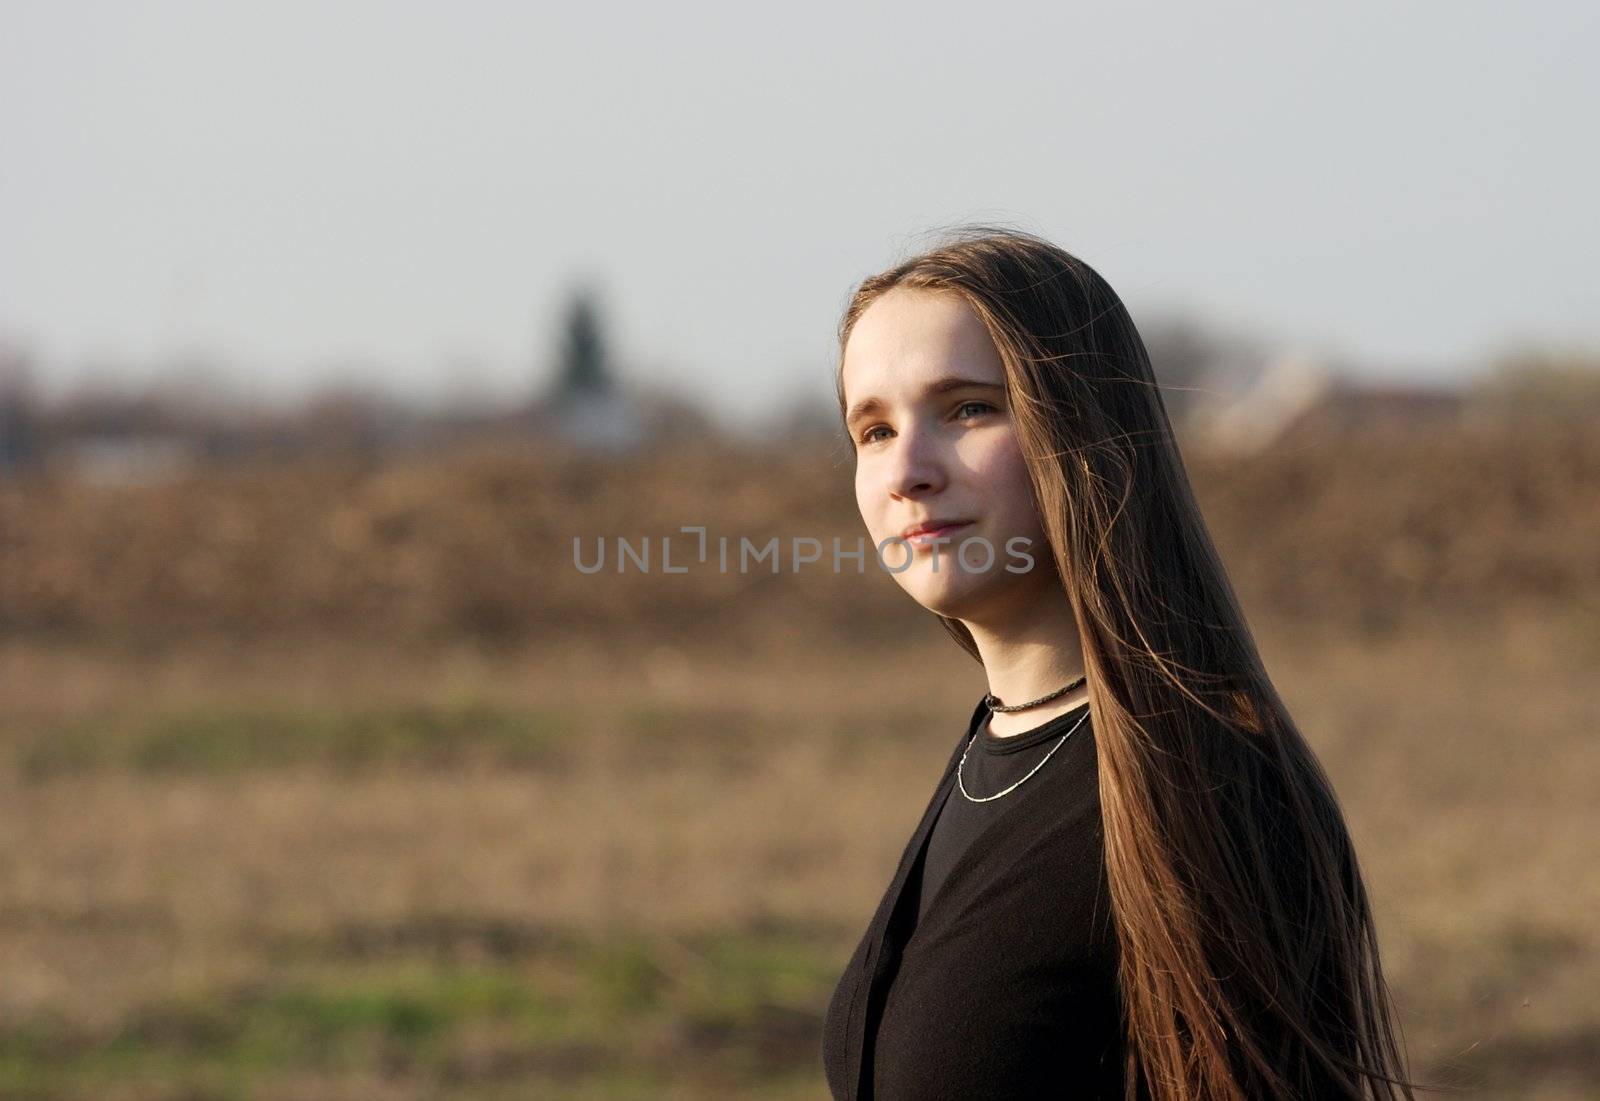 Portrait of girl walking on a dry field